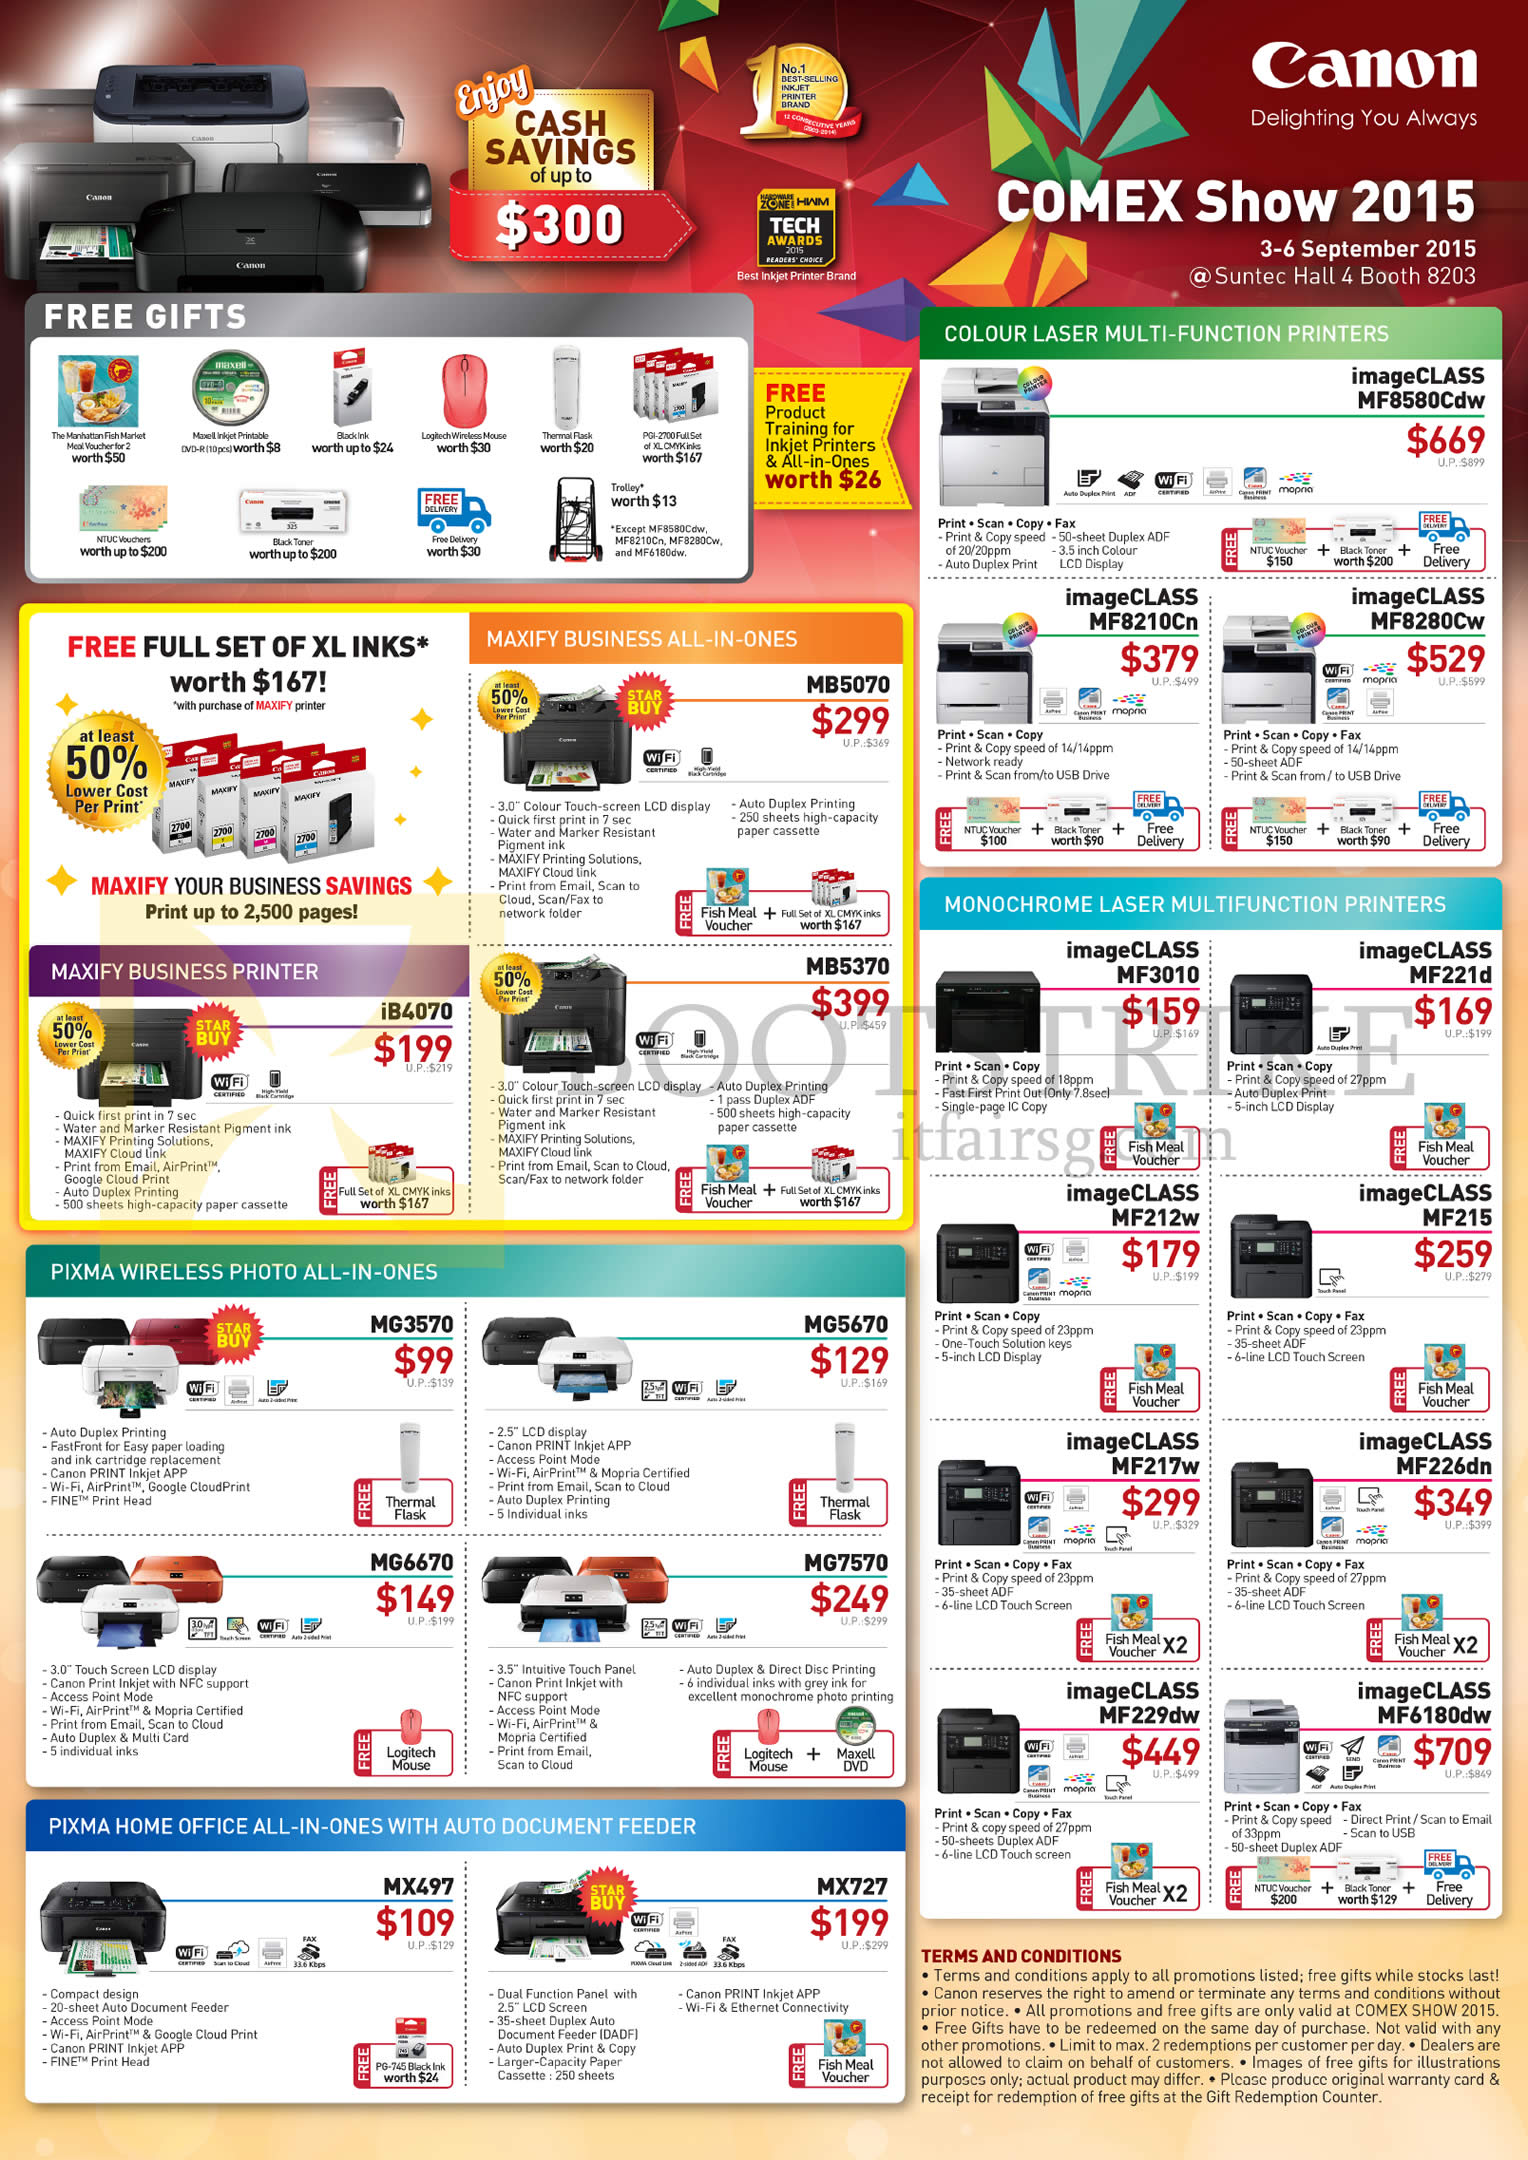 COMEX 2015 price list image brochure of Canon Printers IB4070, MB5070, 5370, MG3570, 5670, MX497, 727, ImageCLASS MF8580Cdw, MF8210Cn, MF8280Cw, MF3010, MF221d, MF212w, MF229dw, MF6180dw